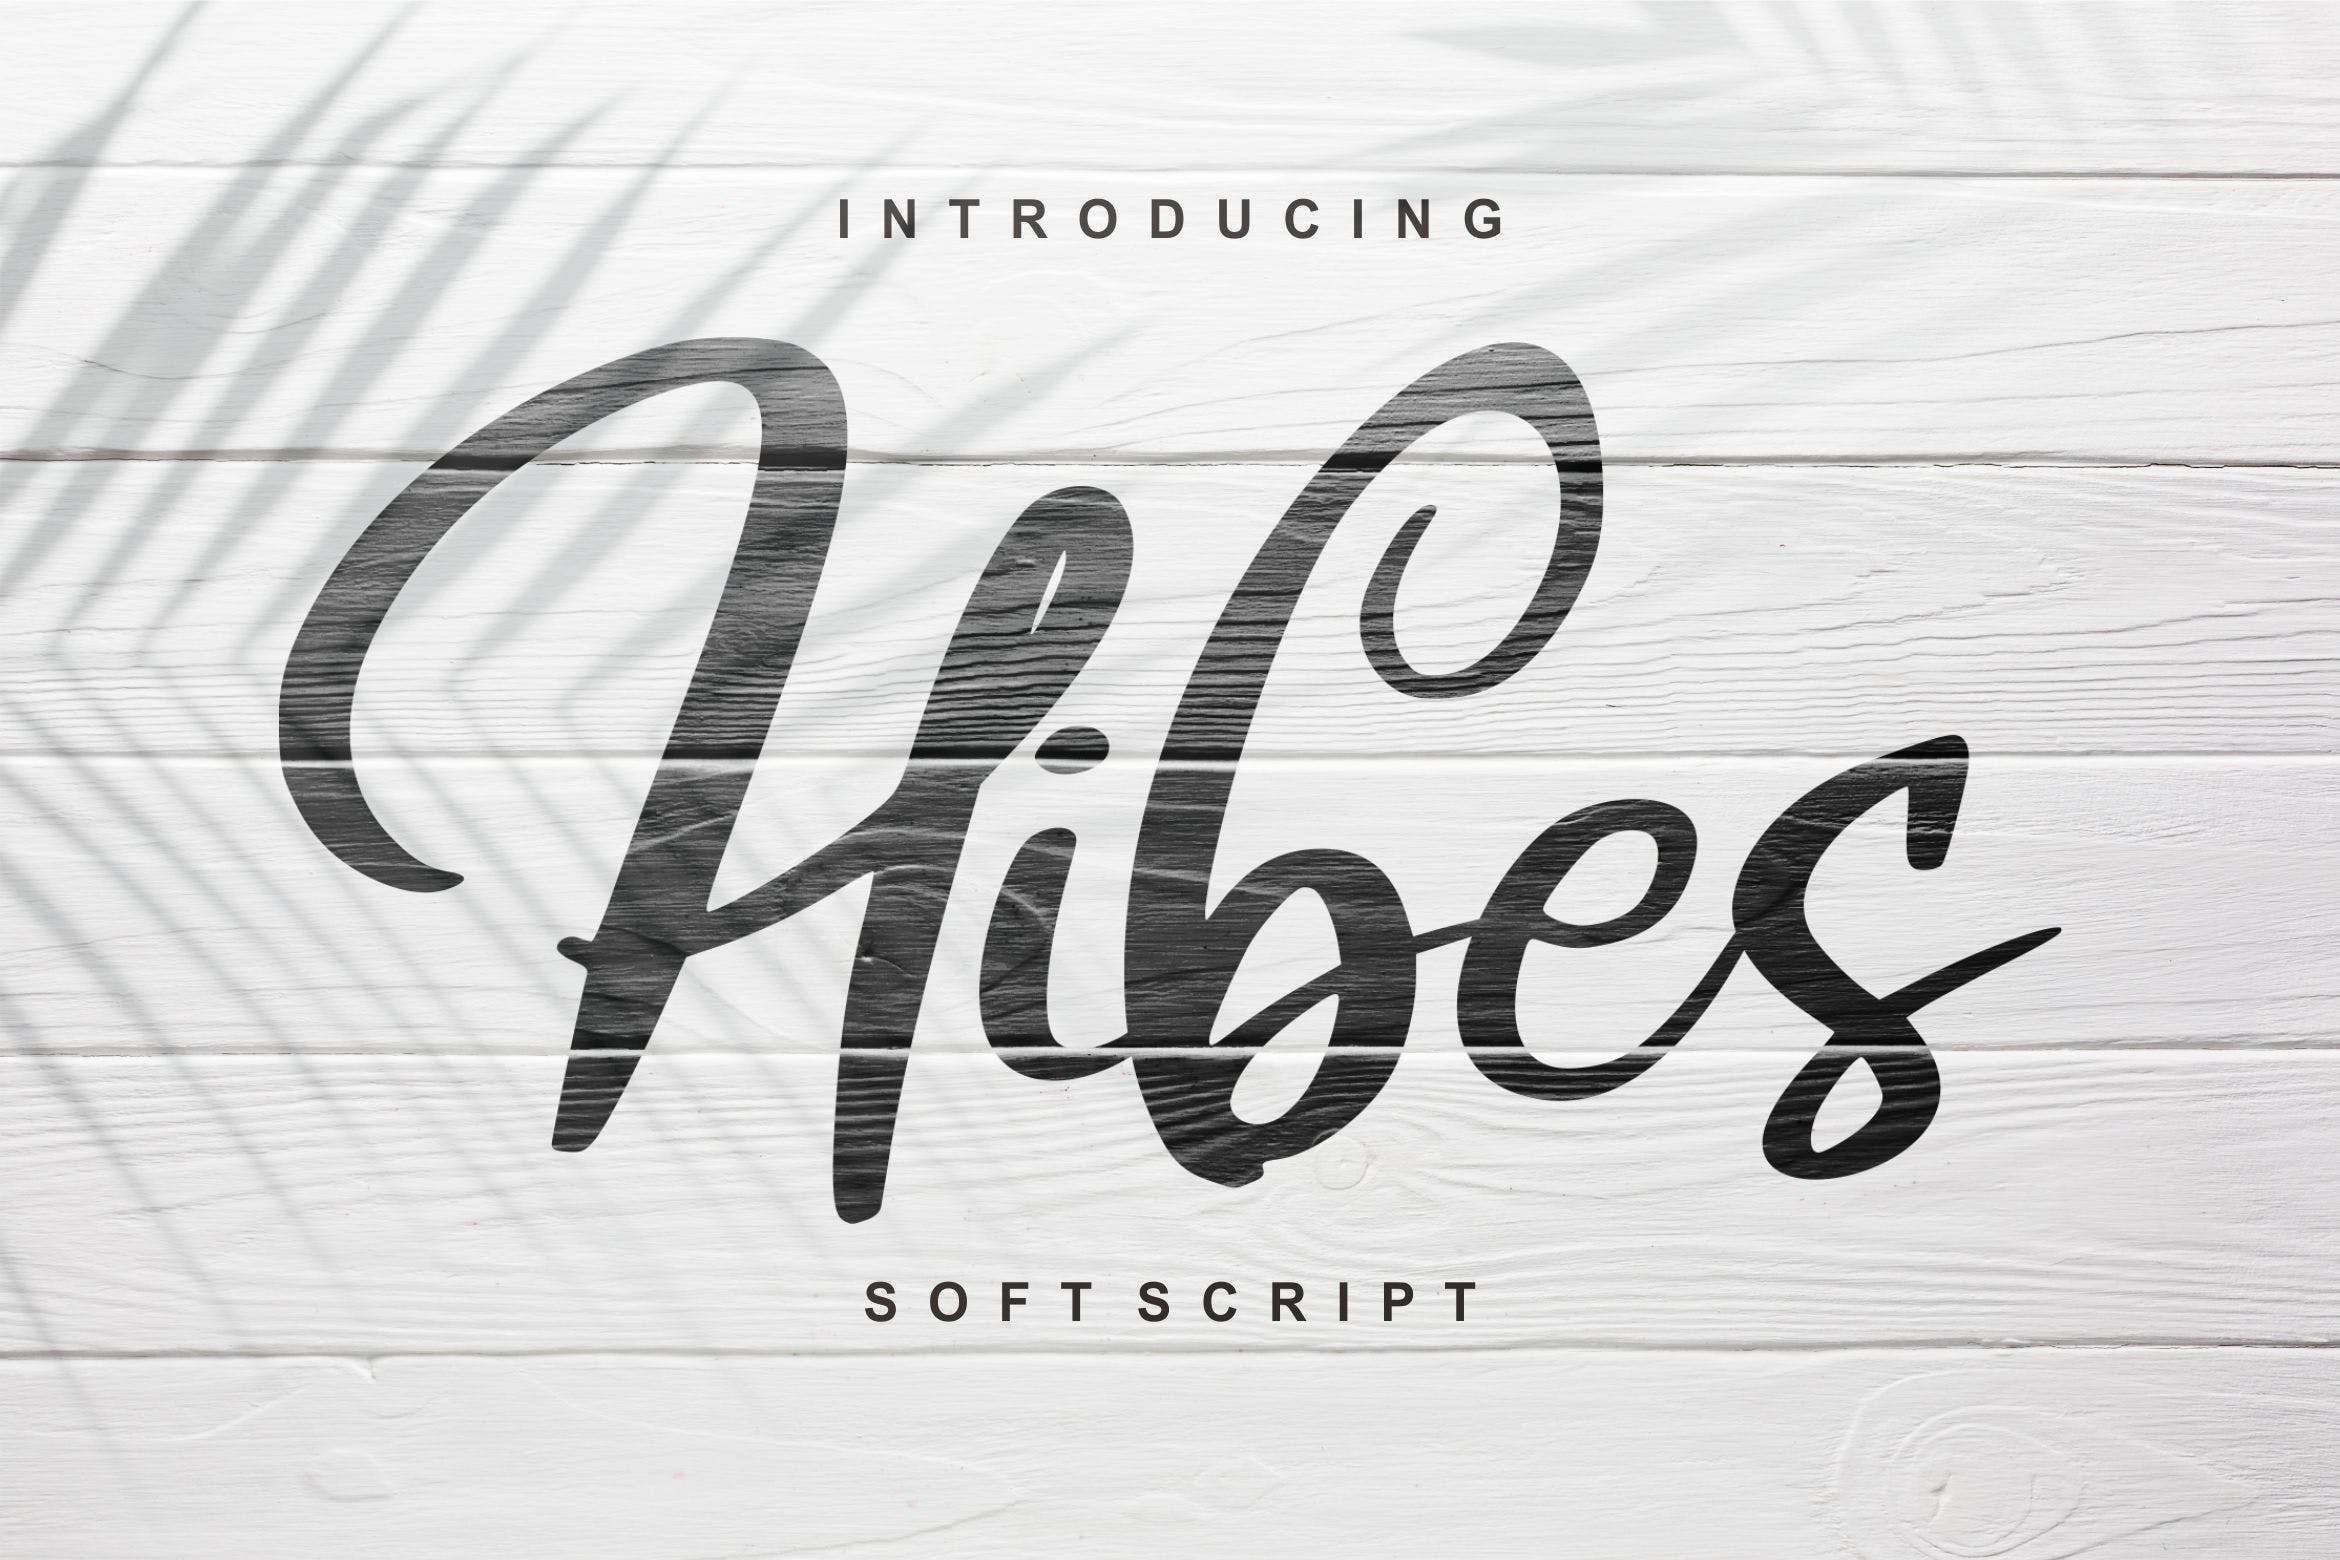 软笔刷书法风格英文手写字体非凡图库精选 Hibes | Soft Script Font插图